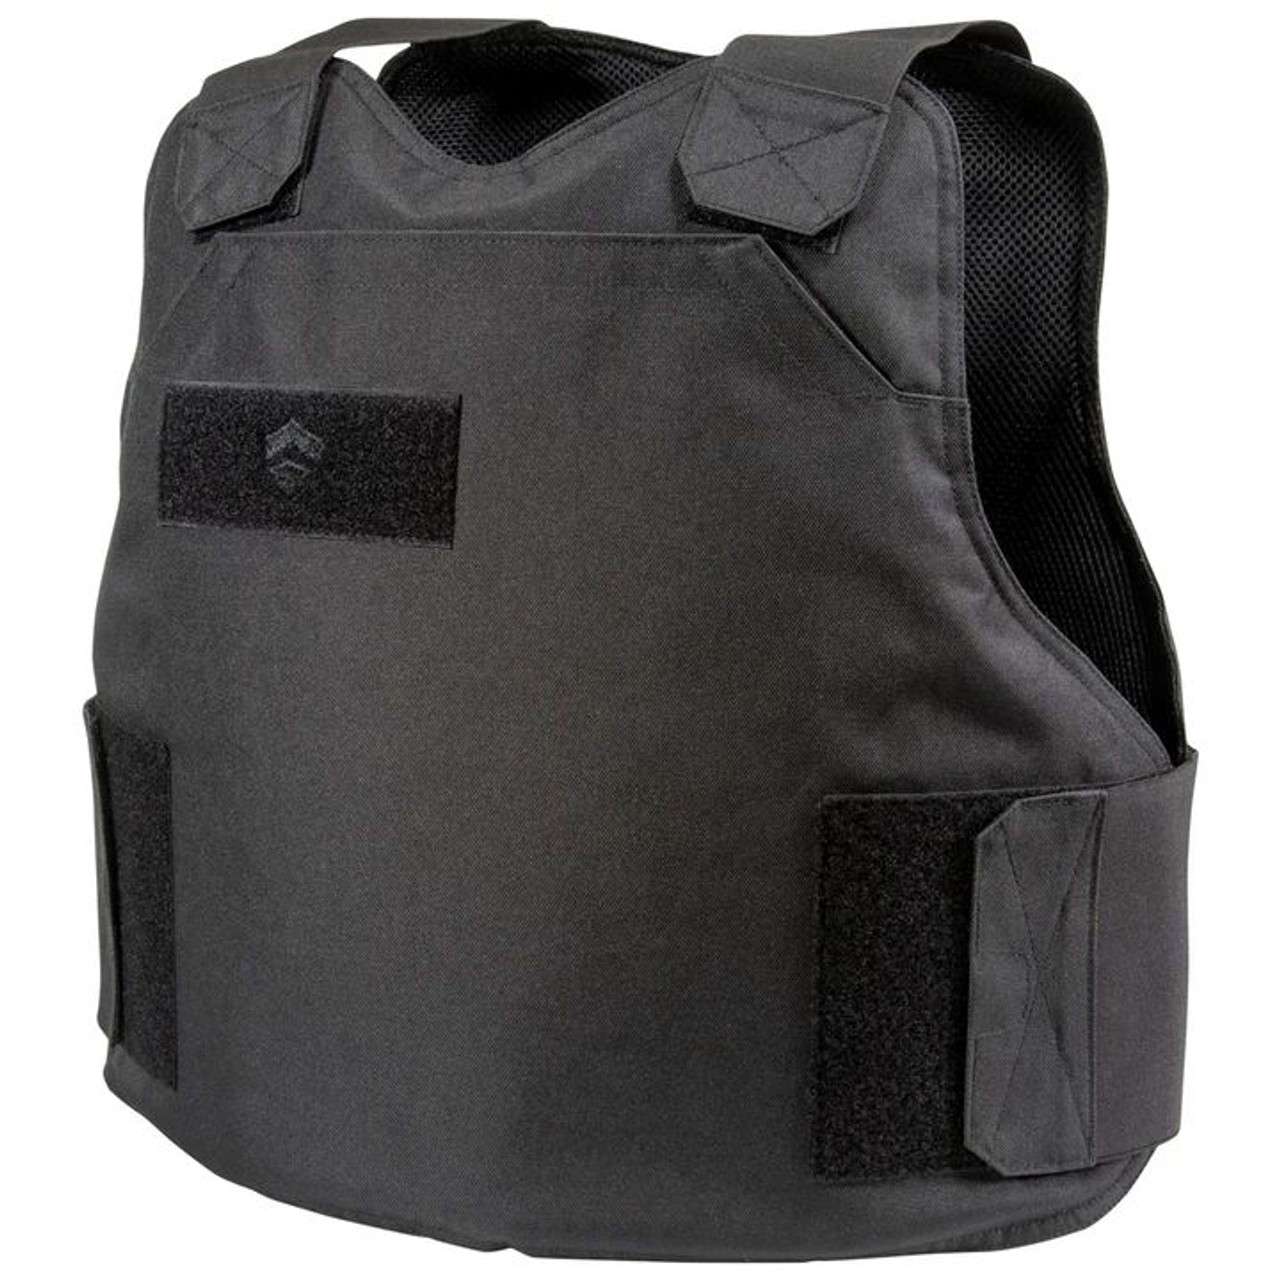 Bulletsafe Bulletproof Vest VP3 Level IIIA - NIJ Certified Level 3 Body Armor - Large Black